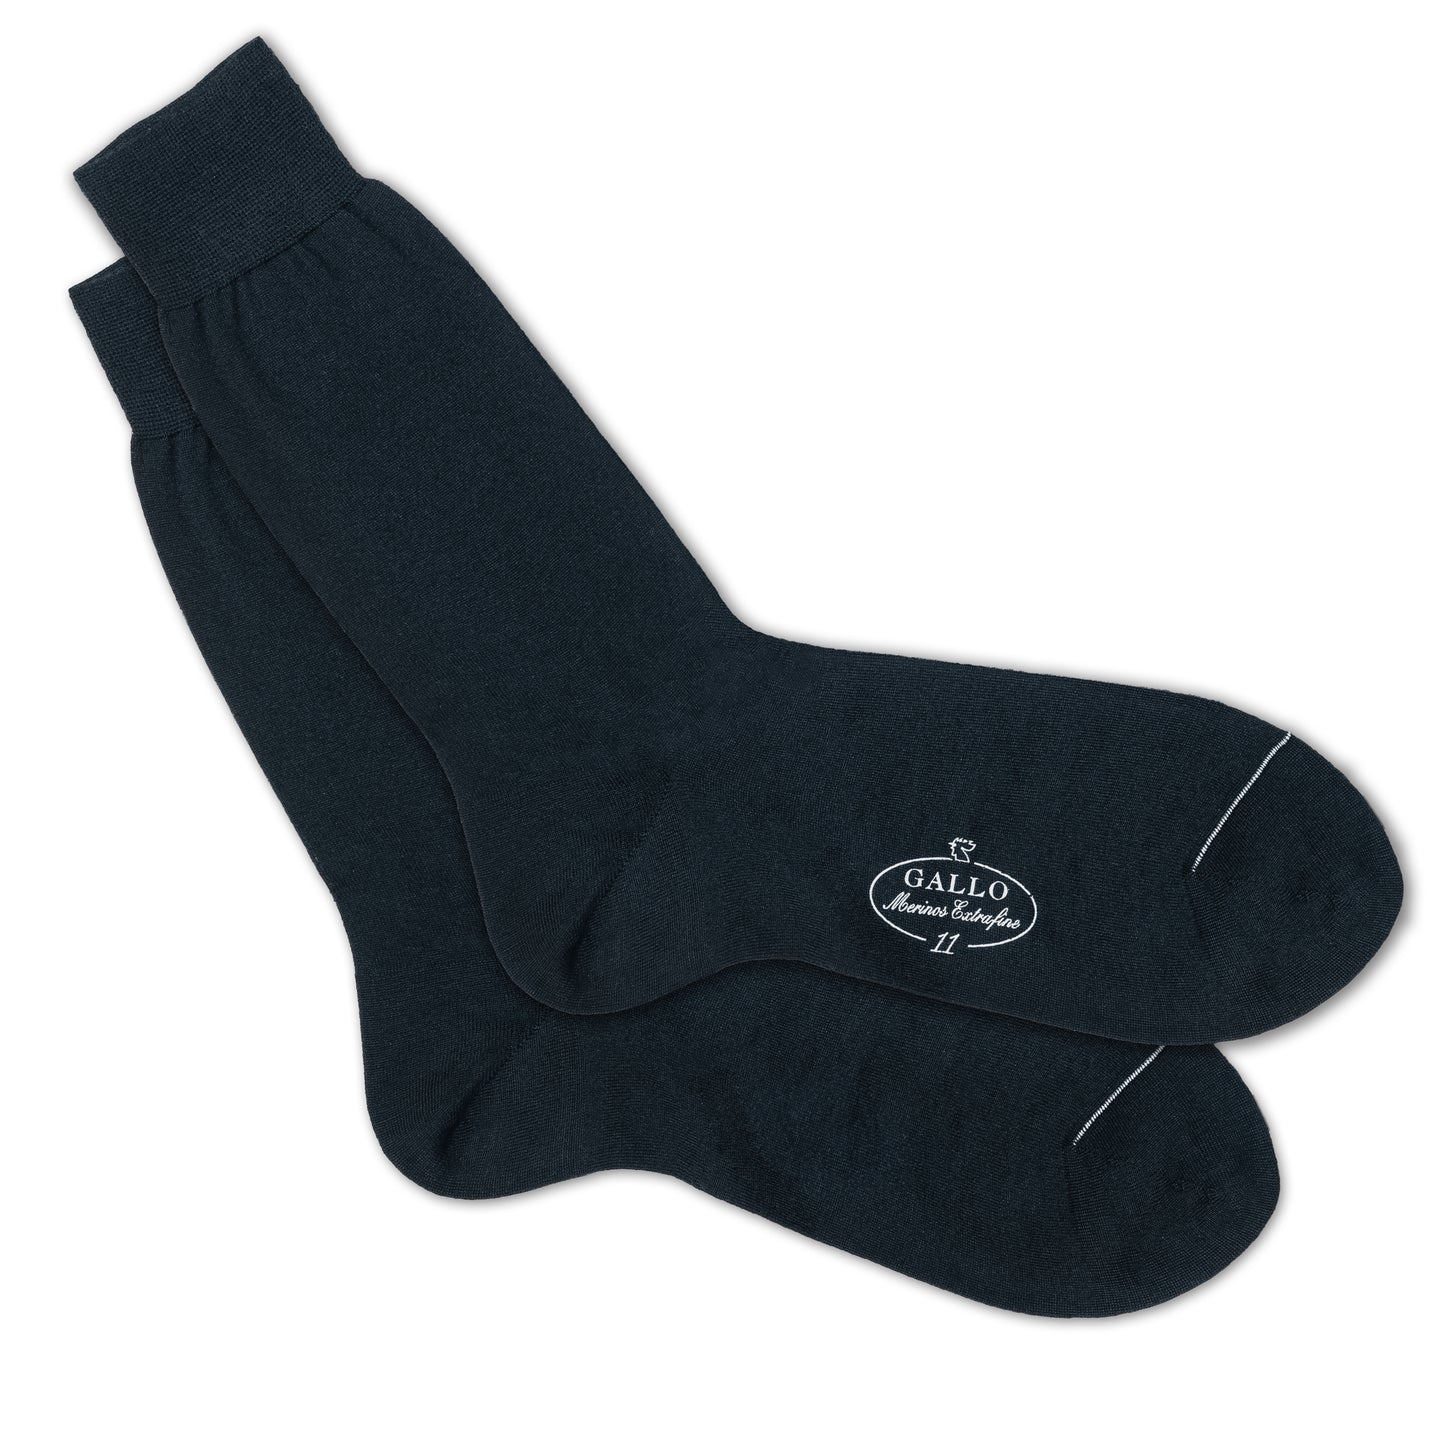 Italienische Herren-Socken in nacht blau von GALLO, aus 80% Baumwolle mit 20% Polyamid. Glatte Optik. Gefertigt in Italien. Paarweise Ansicht